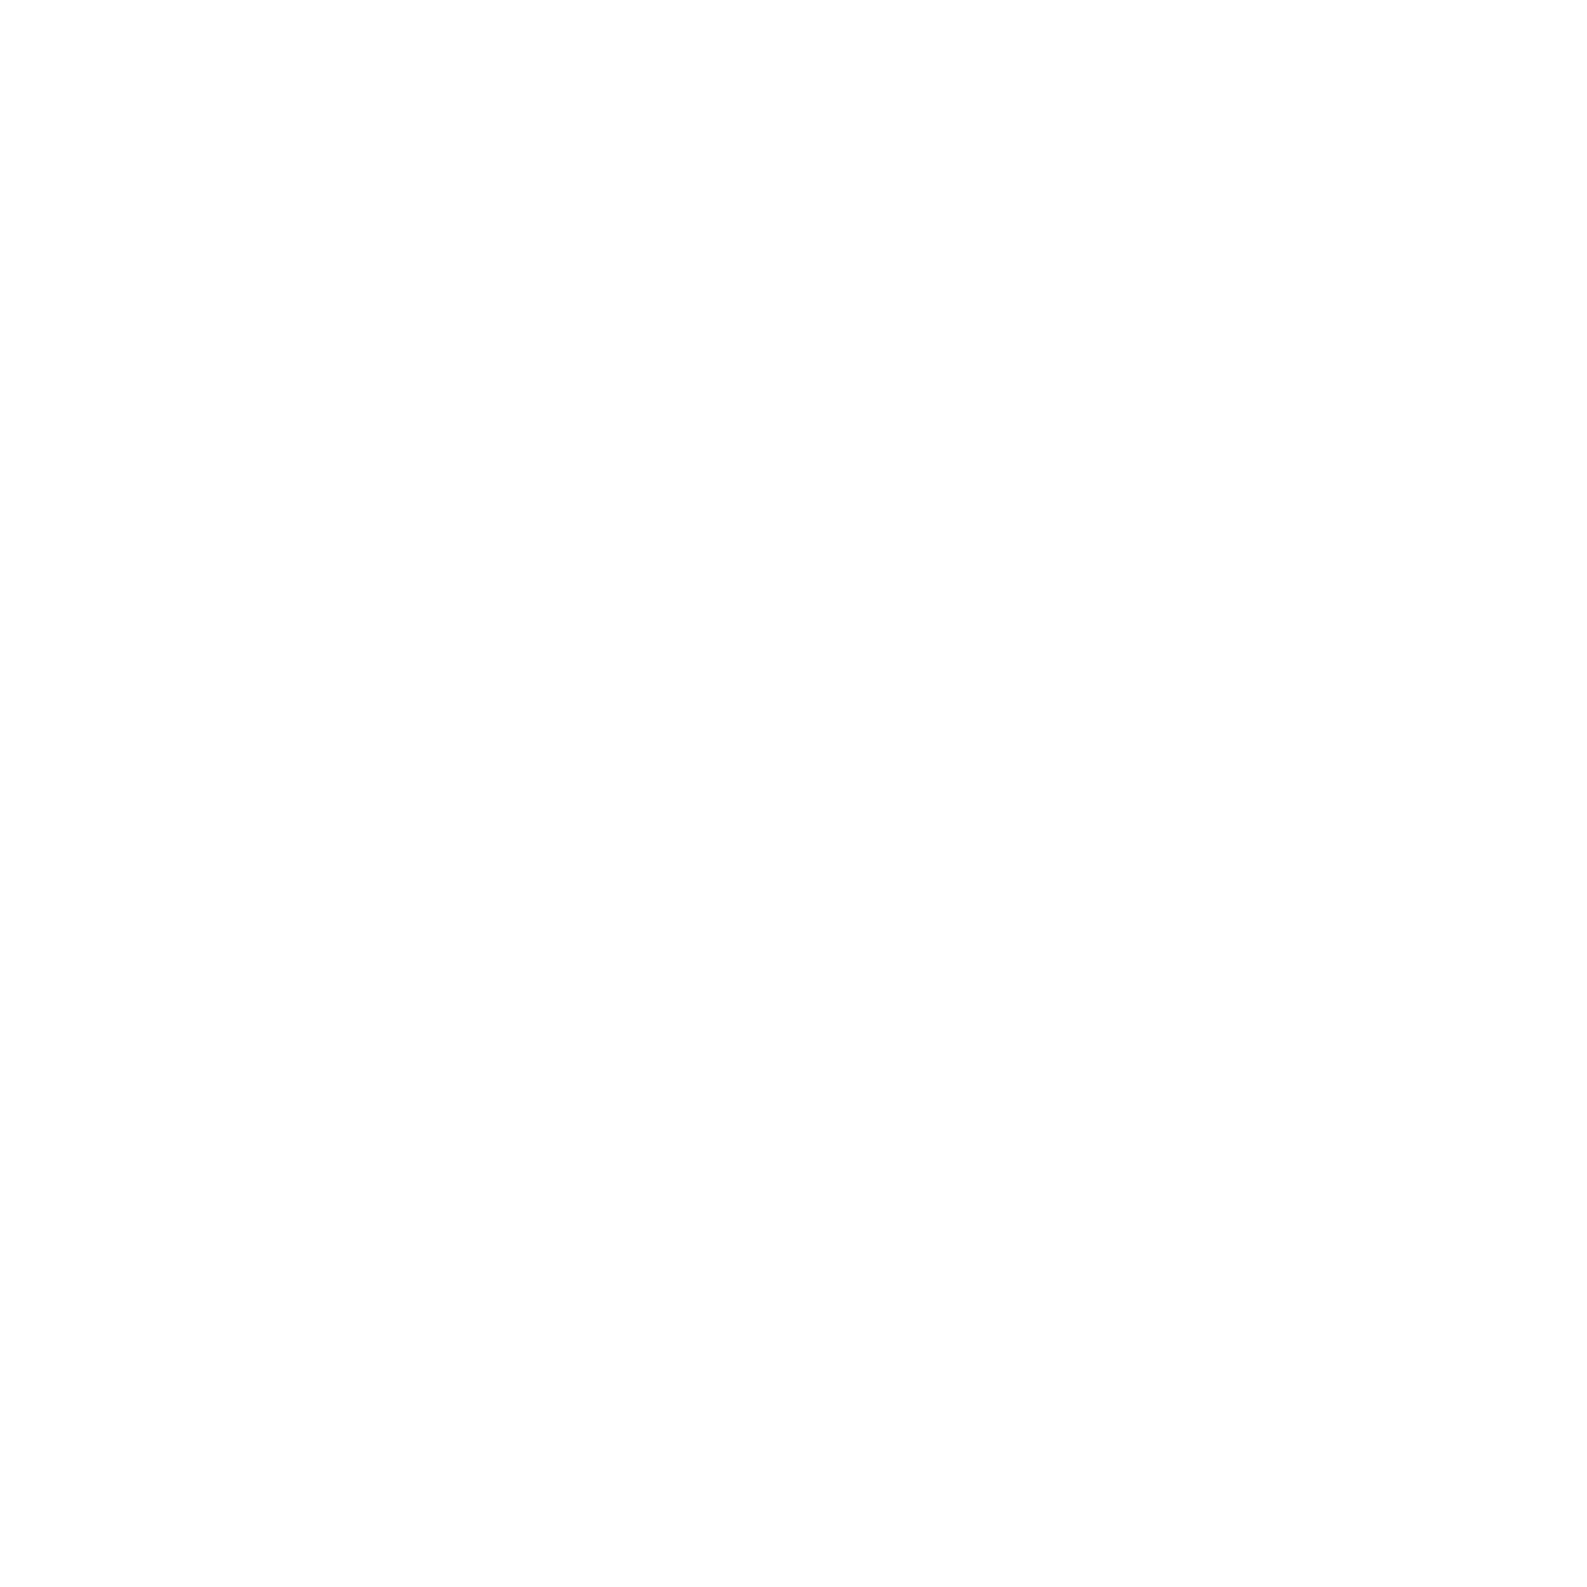 Elkem logo for dark backgrounds (transparent PNG)